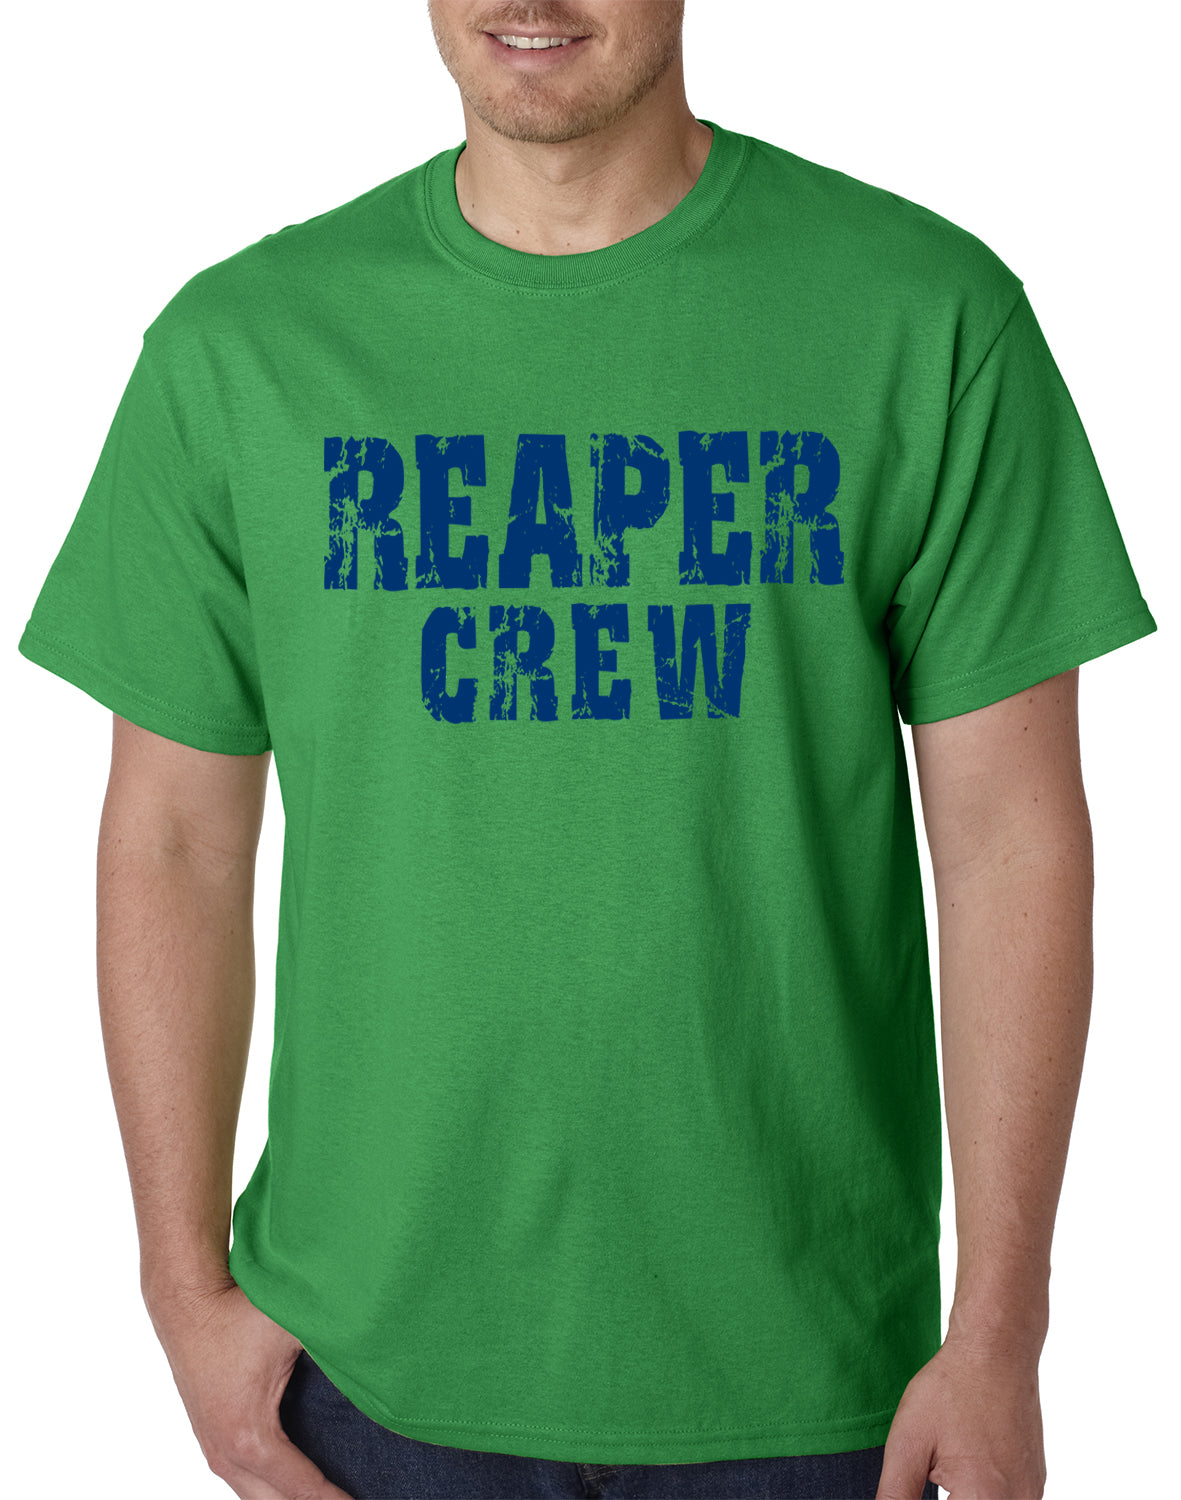 Reaper Crew Happy Mens T-shirt